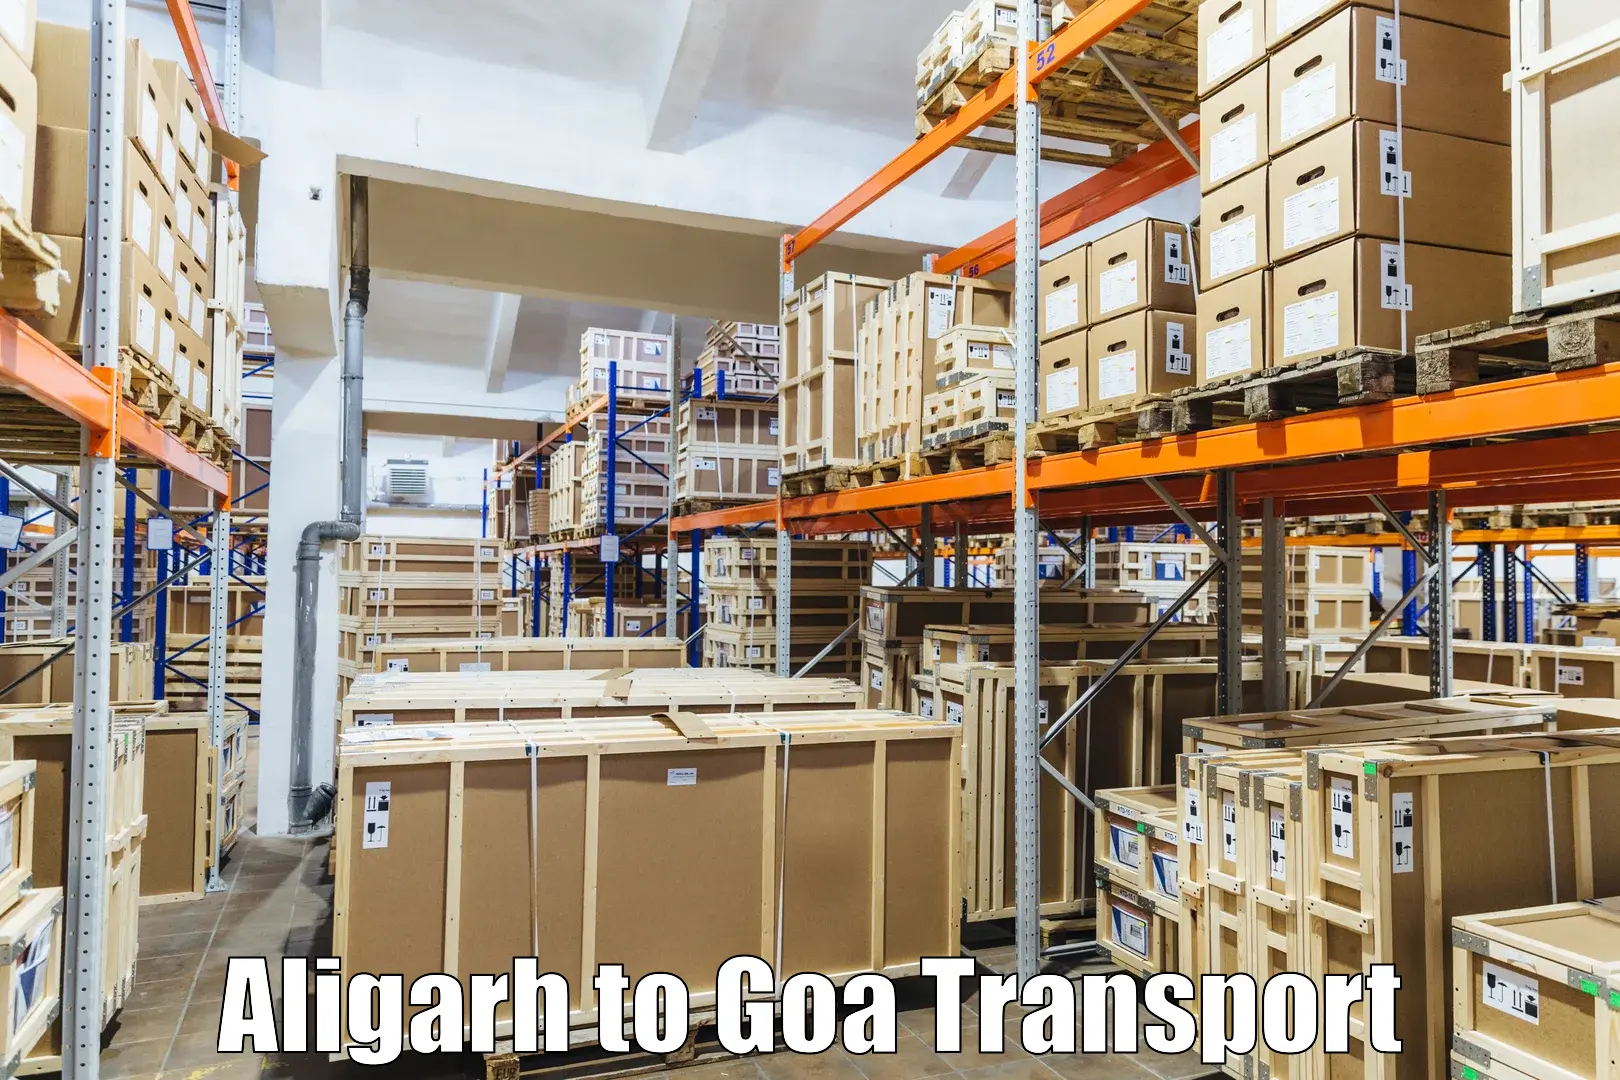 Delivery service Aligarh to Bicholim